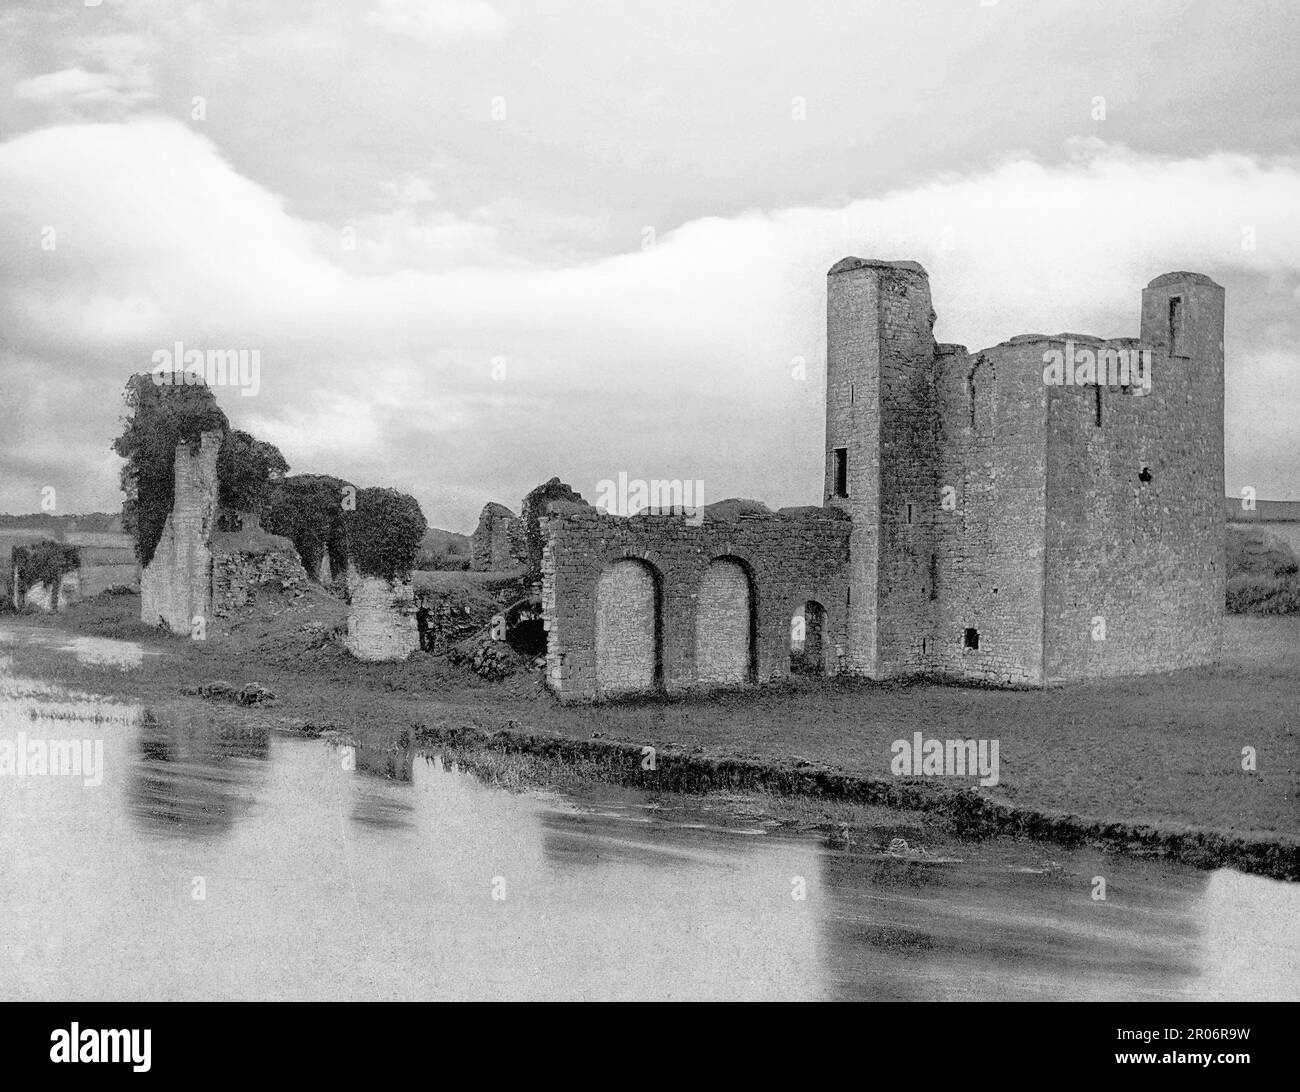 Ein Blick aus dem späten 19. Jahrhundert auf die damaligen Ruinen von Trim Castle am Südufer des Flusses Boyne in Trim, County Meath, Irland. Erbaut von Hugh de Lacy, während des 15. Jahrhunderts traf sich das irische Parlament dort mehrmals und eine Münzprägeanstalt wurde im Schloss betrieben. Es war damals das Verwaltungszentrum von Meath und markierte die äußere nördliche Grenze des Pale. Im 16. Jahrhundert fiel sie in den Niedergang und durfte sich verschlechtern, wurde aber während der Kriege der irischen Konföderierten in den 1640er Jahren wieder gestärkt. Stockfoto